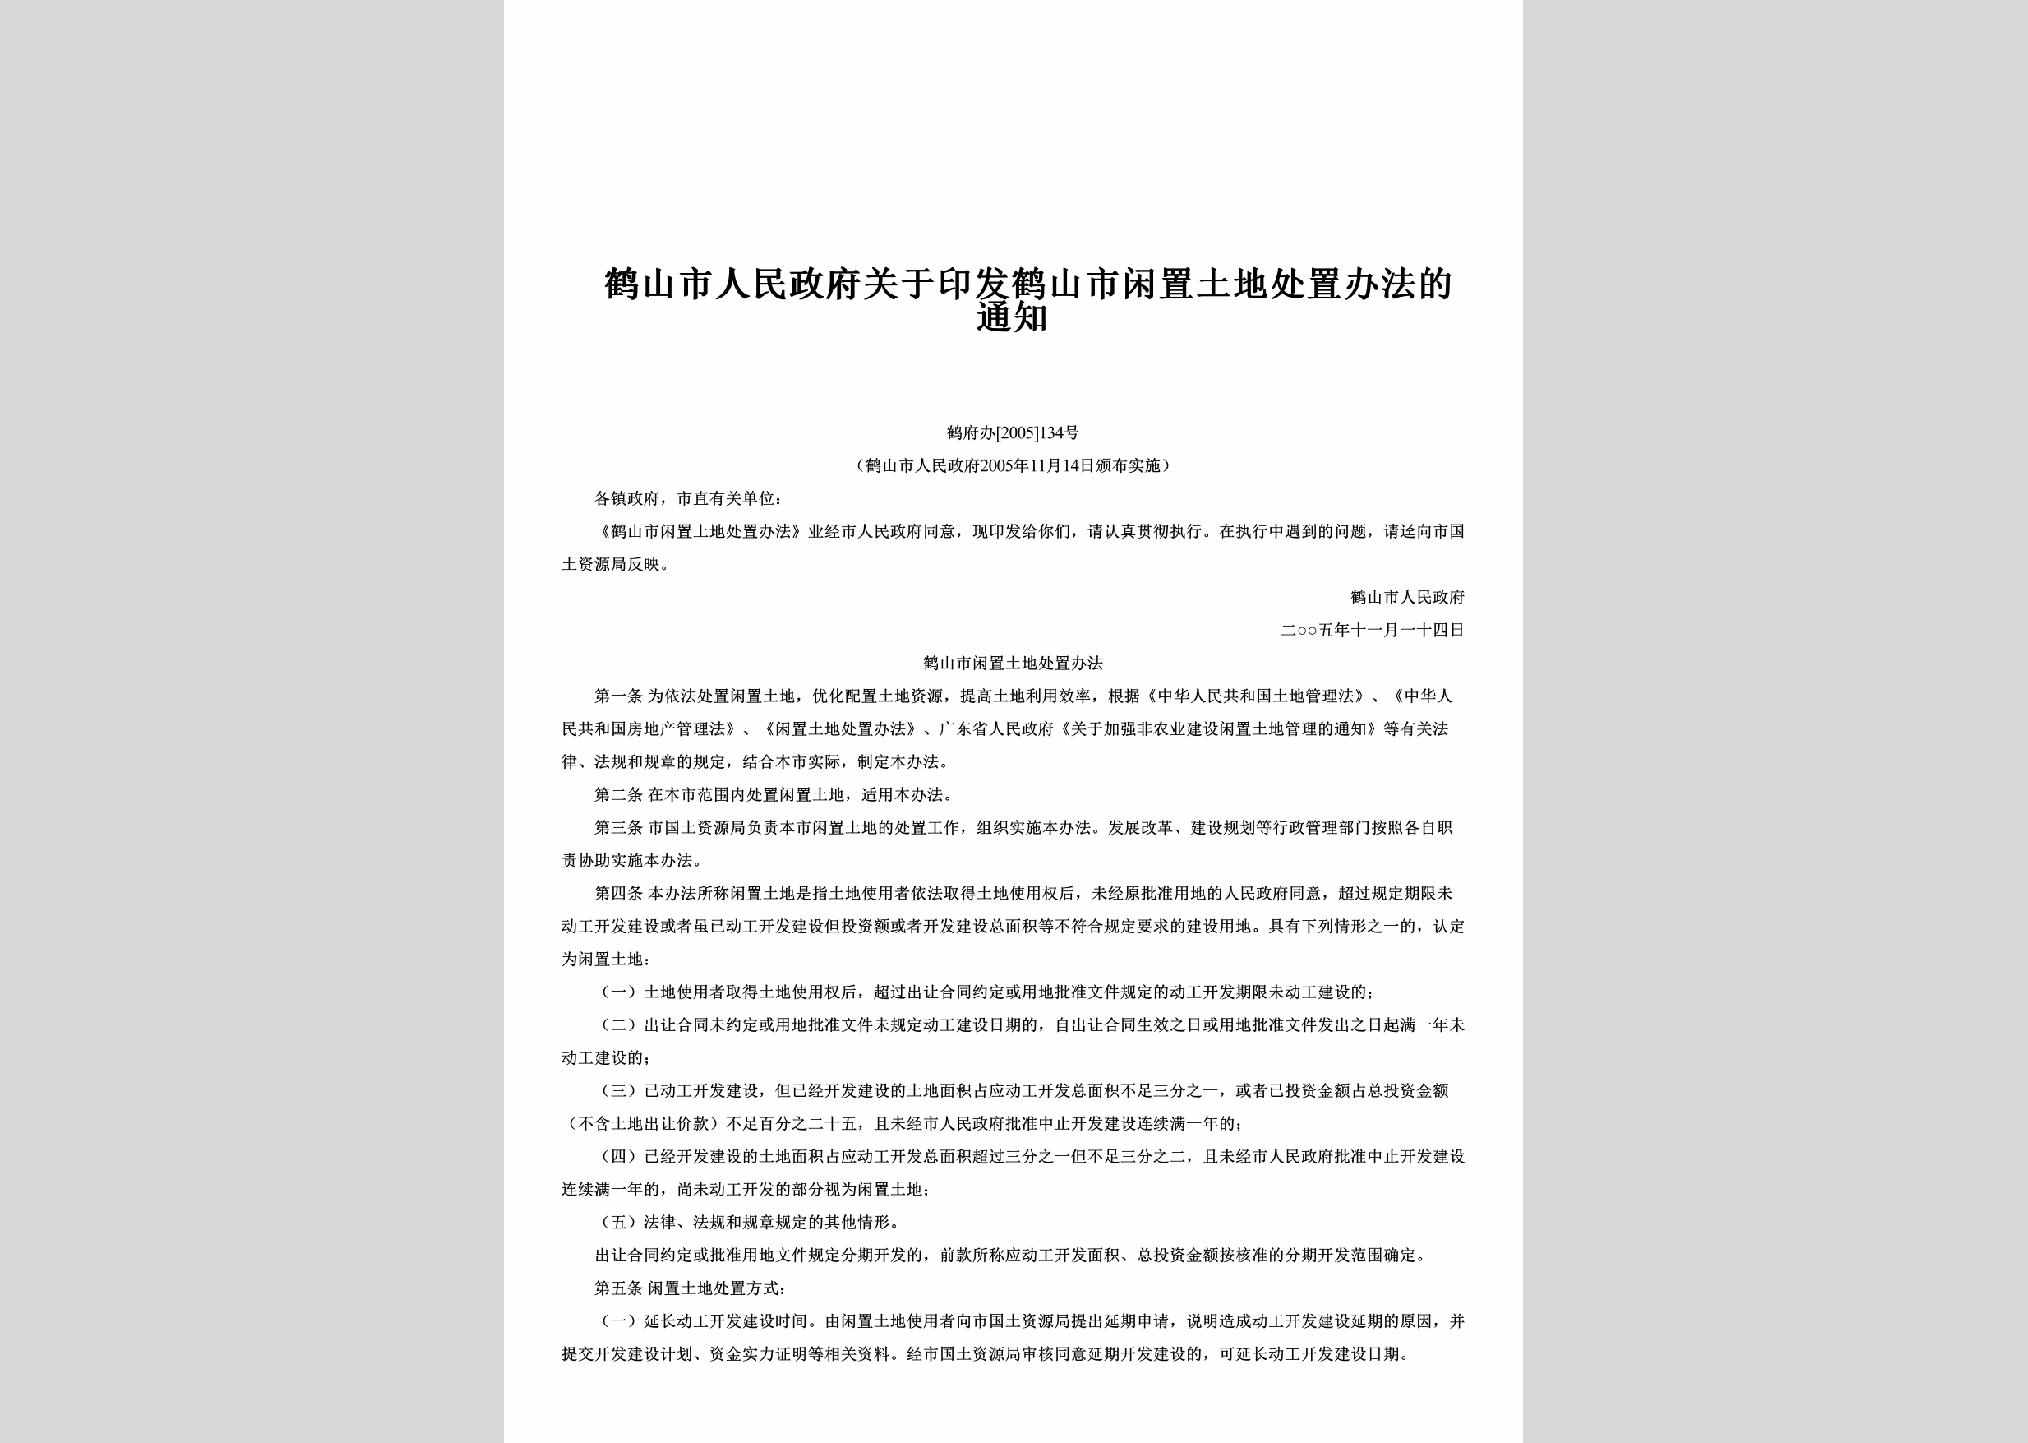 鹤府办[2005]134号：关于印发鹤山市闲置土地处置办法的通知